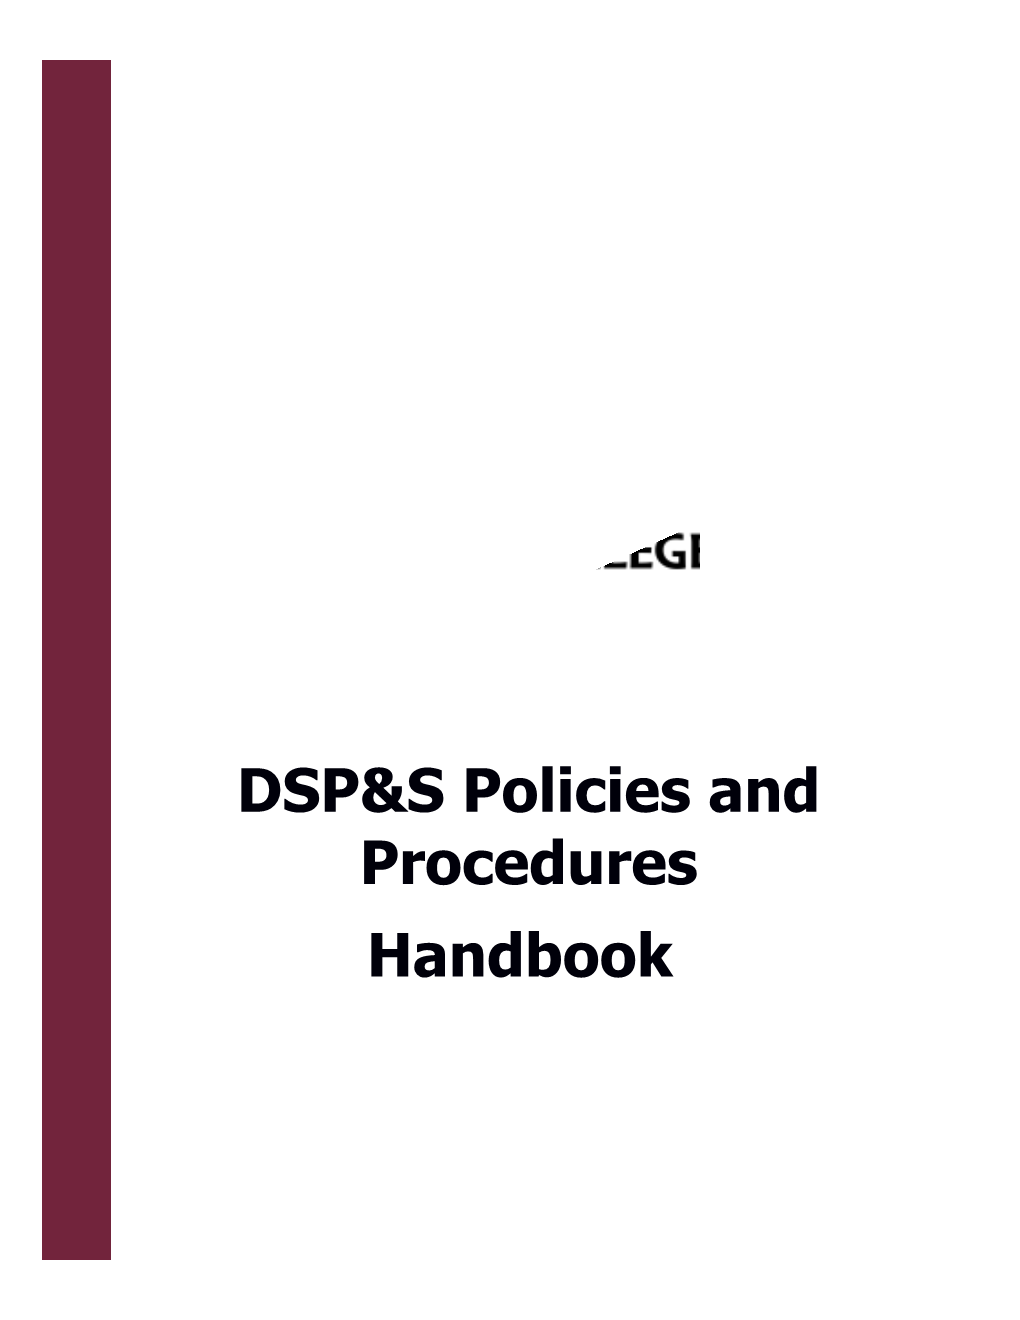 DSP&Spolicies and Procedures